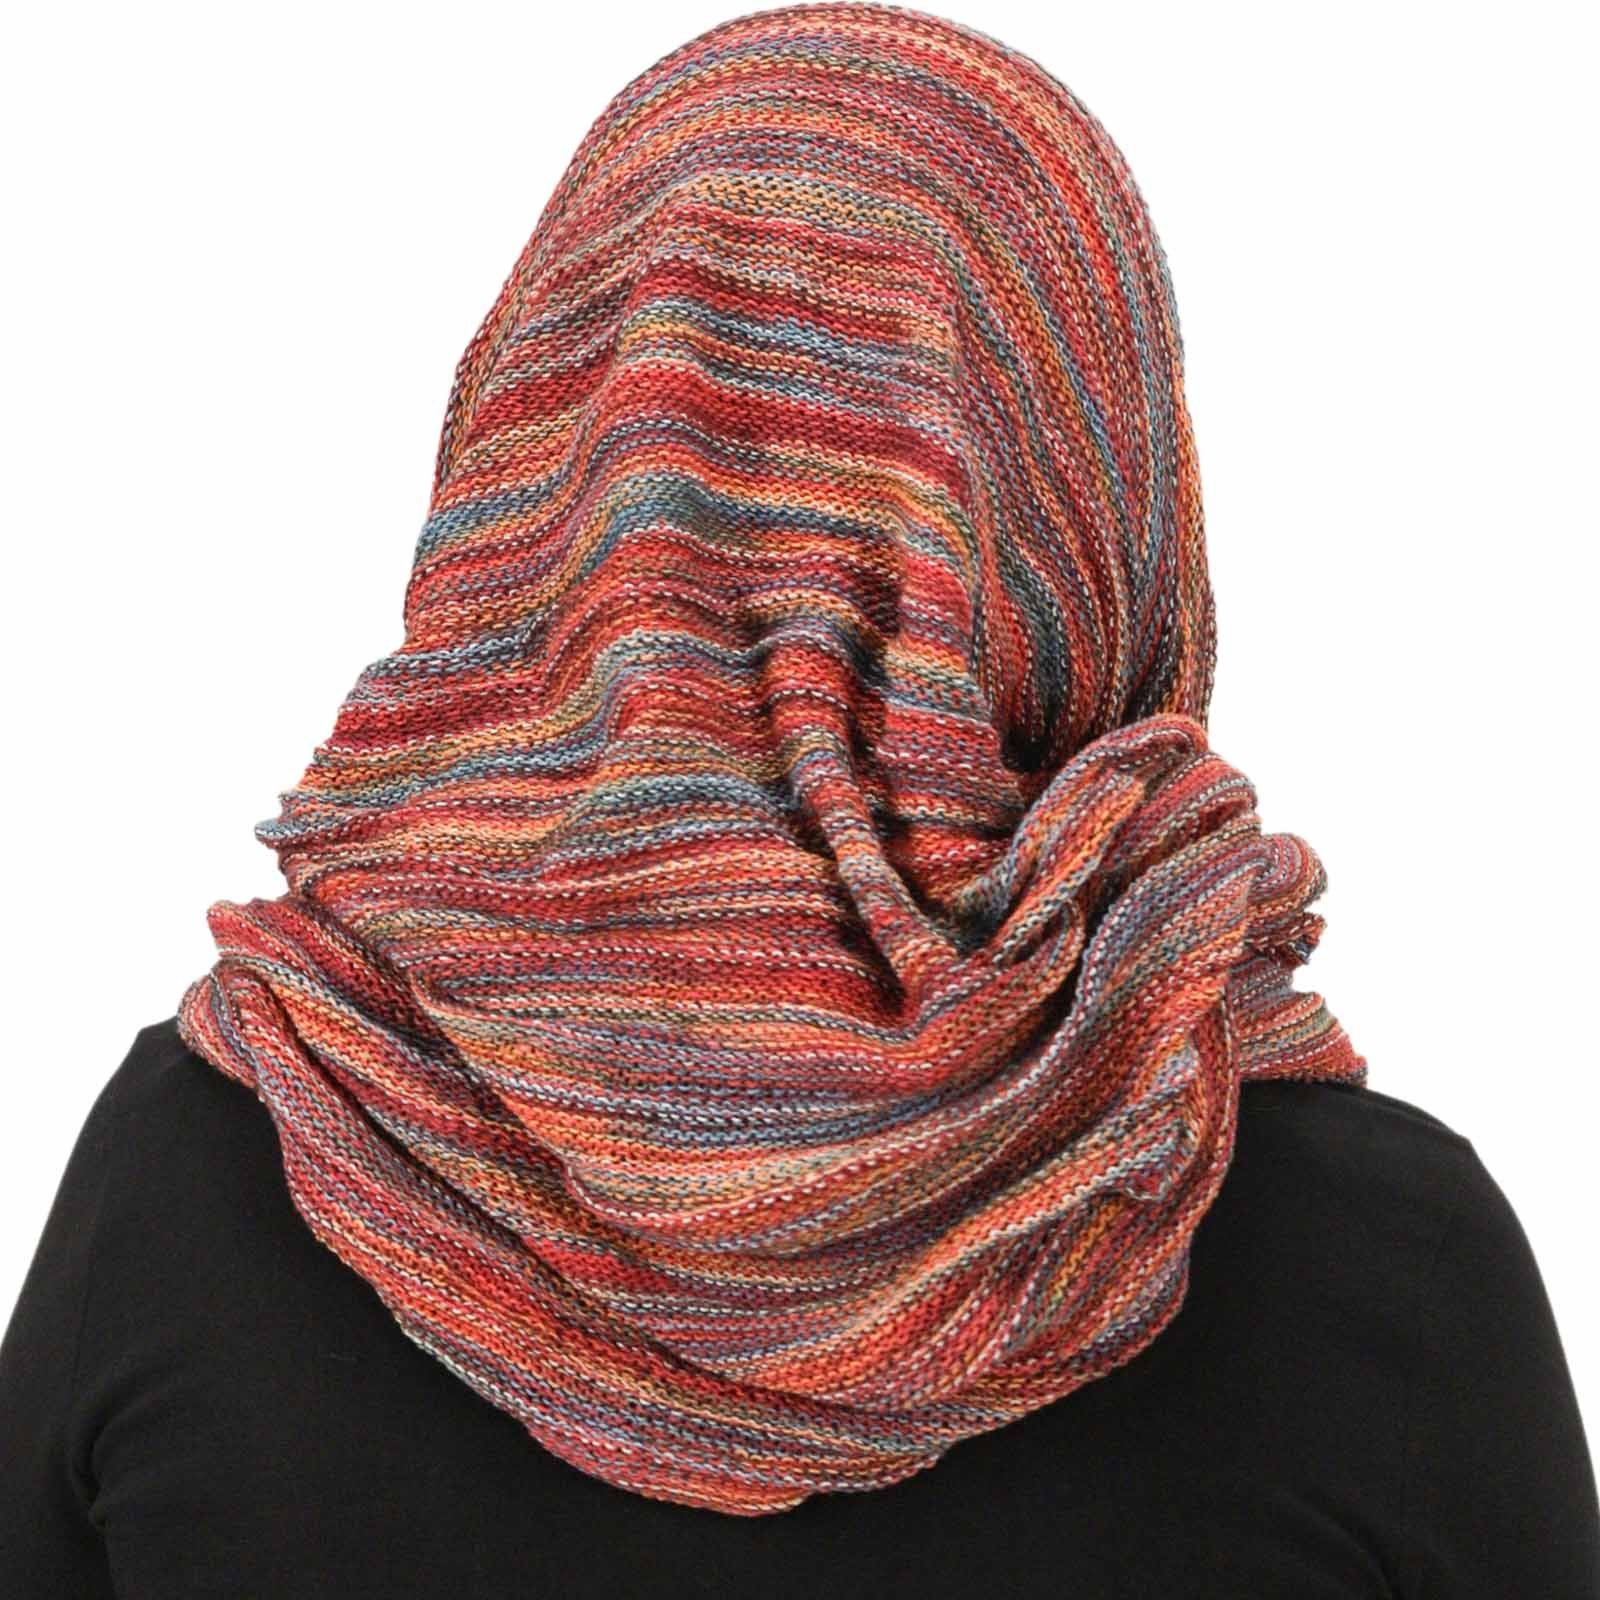 KUNST UND MAGIE Hijab Loop Dreadtube / Kapuzenschal Schlauchschal Hijab Multifunktionstuch Rot Orange